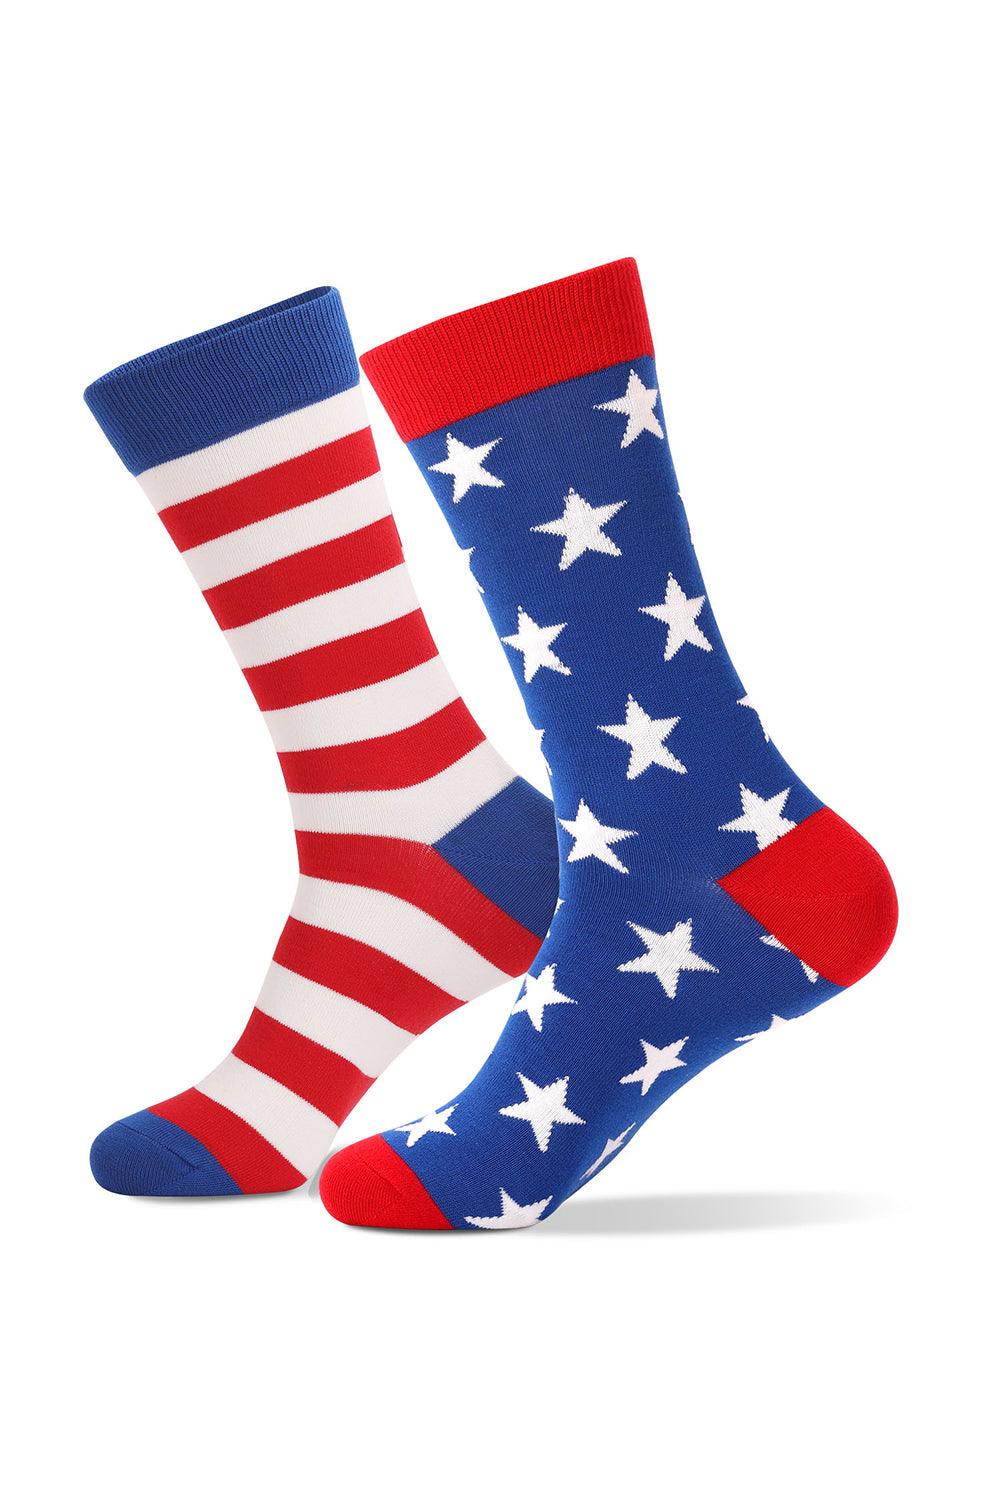 Sail Blue American Flag Pattern Soft Knitted Socks - L & M Kee, LLC